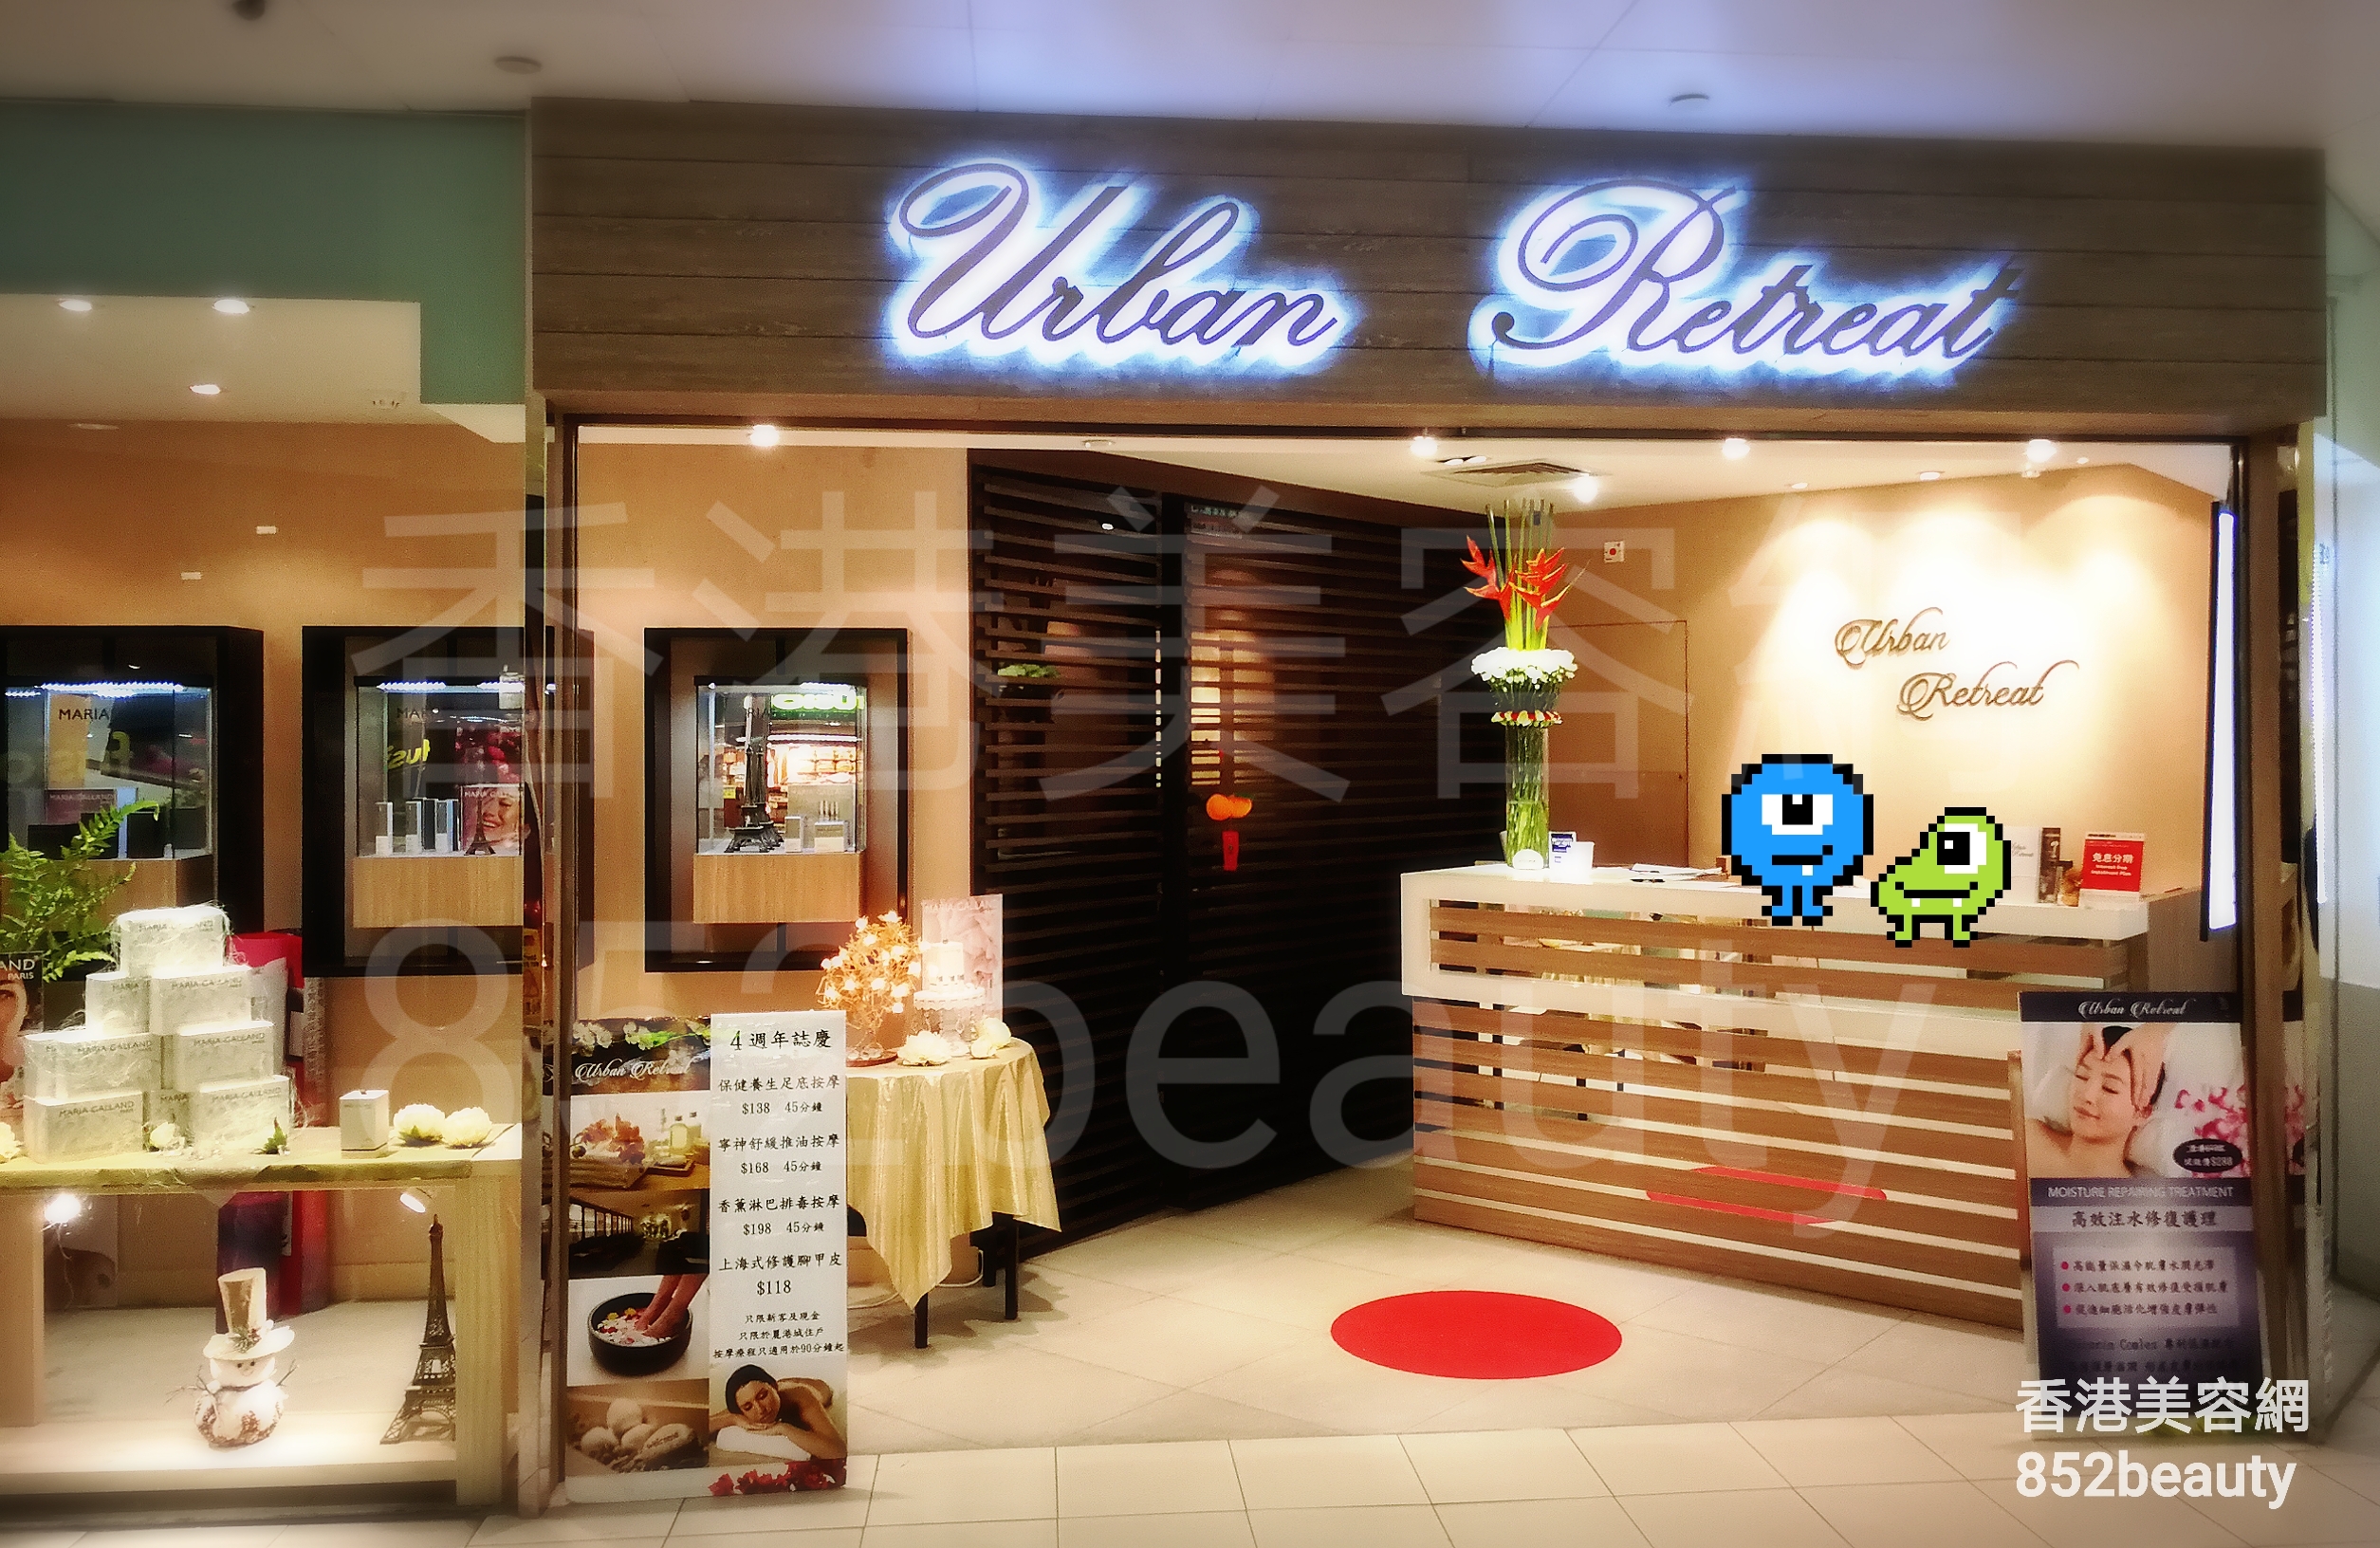 香港美容網 Hong Kong Beauty Salon 美容院 / 美容師: Urban Retreat